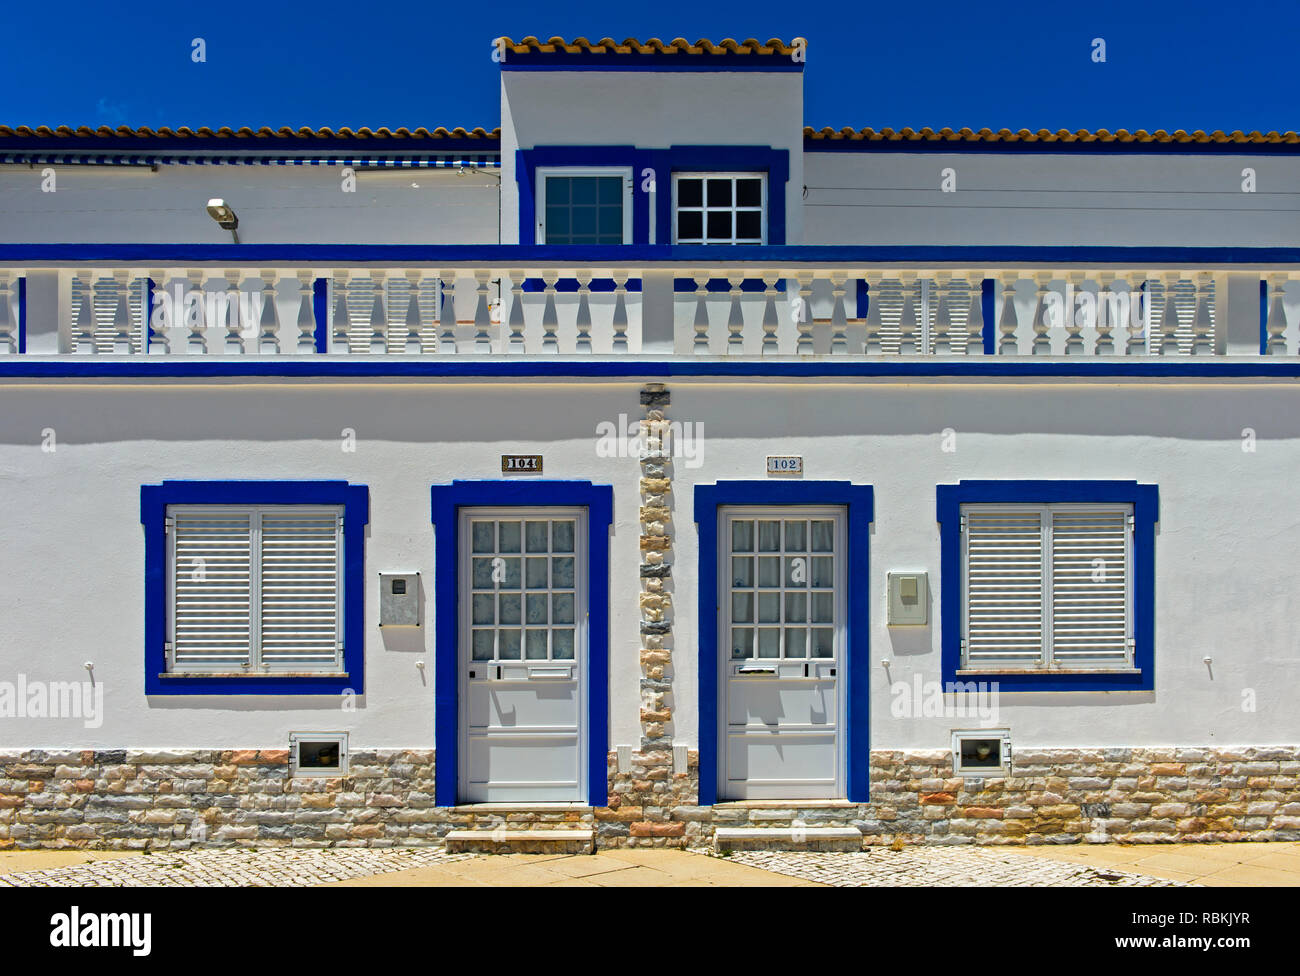 Casa residenziale in stile mediterraneo, Santa Luzia, Algarve, PORTOGALLO Foto Stock